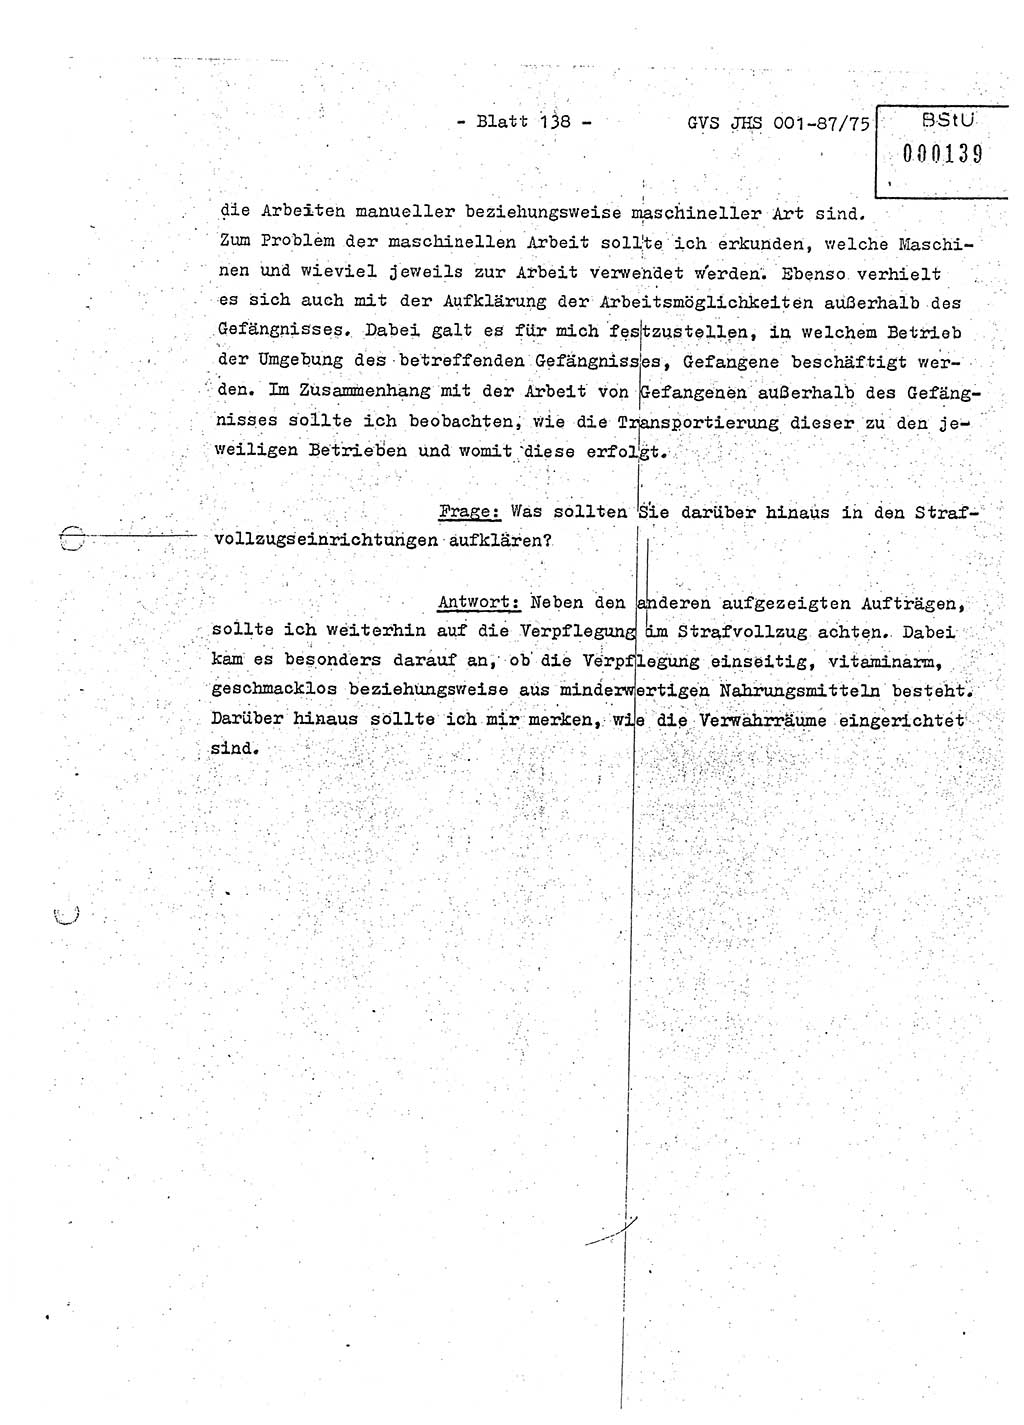 Diplomarbeit Hauptmann Volkmar Heinz (Abt. ⅩⅣ), Oberleutnant Lothar Rüdiger (BV Lpz. Abt. Ⅺ), Ministerium für Staatssicherheit (MfS) [Deutsche Demokratische Republik (DDR)], Juristische Hochschule (JHS), Geheime Verschlußsache (GVS) o001-87/75, Potsdam 1975, Seite 138 (Dipl.-Arb. MfS DDR JHS GVS o001-87/75 1975, S. 138)